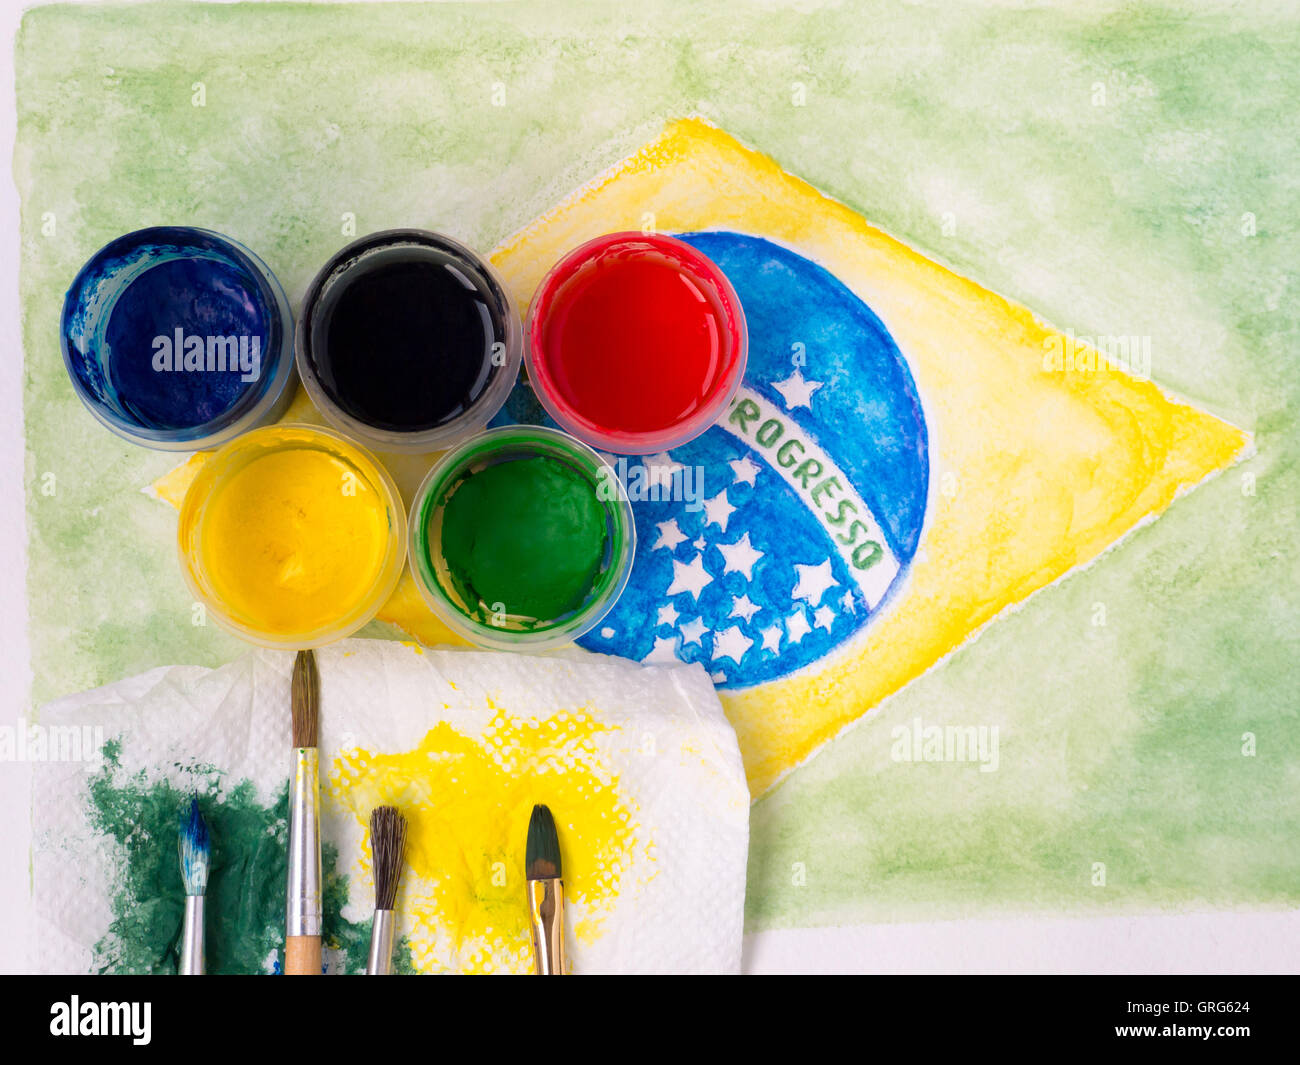 Farben, Pinsel und und gefärbt mit Farben Stoff auf das Brasilien-Flagge-Aquarell Malerei Motto auf die Fahne "Ordem e Progresso" Stockfoto